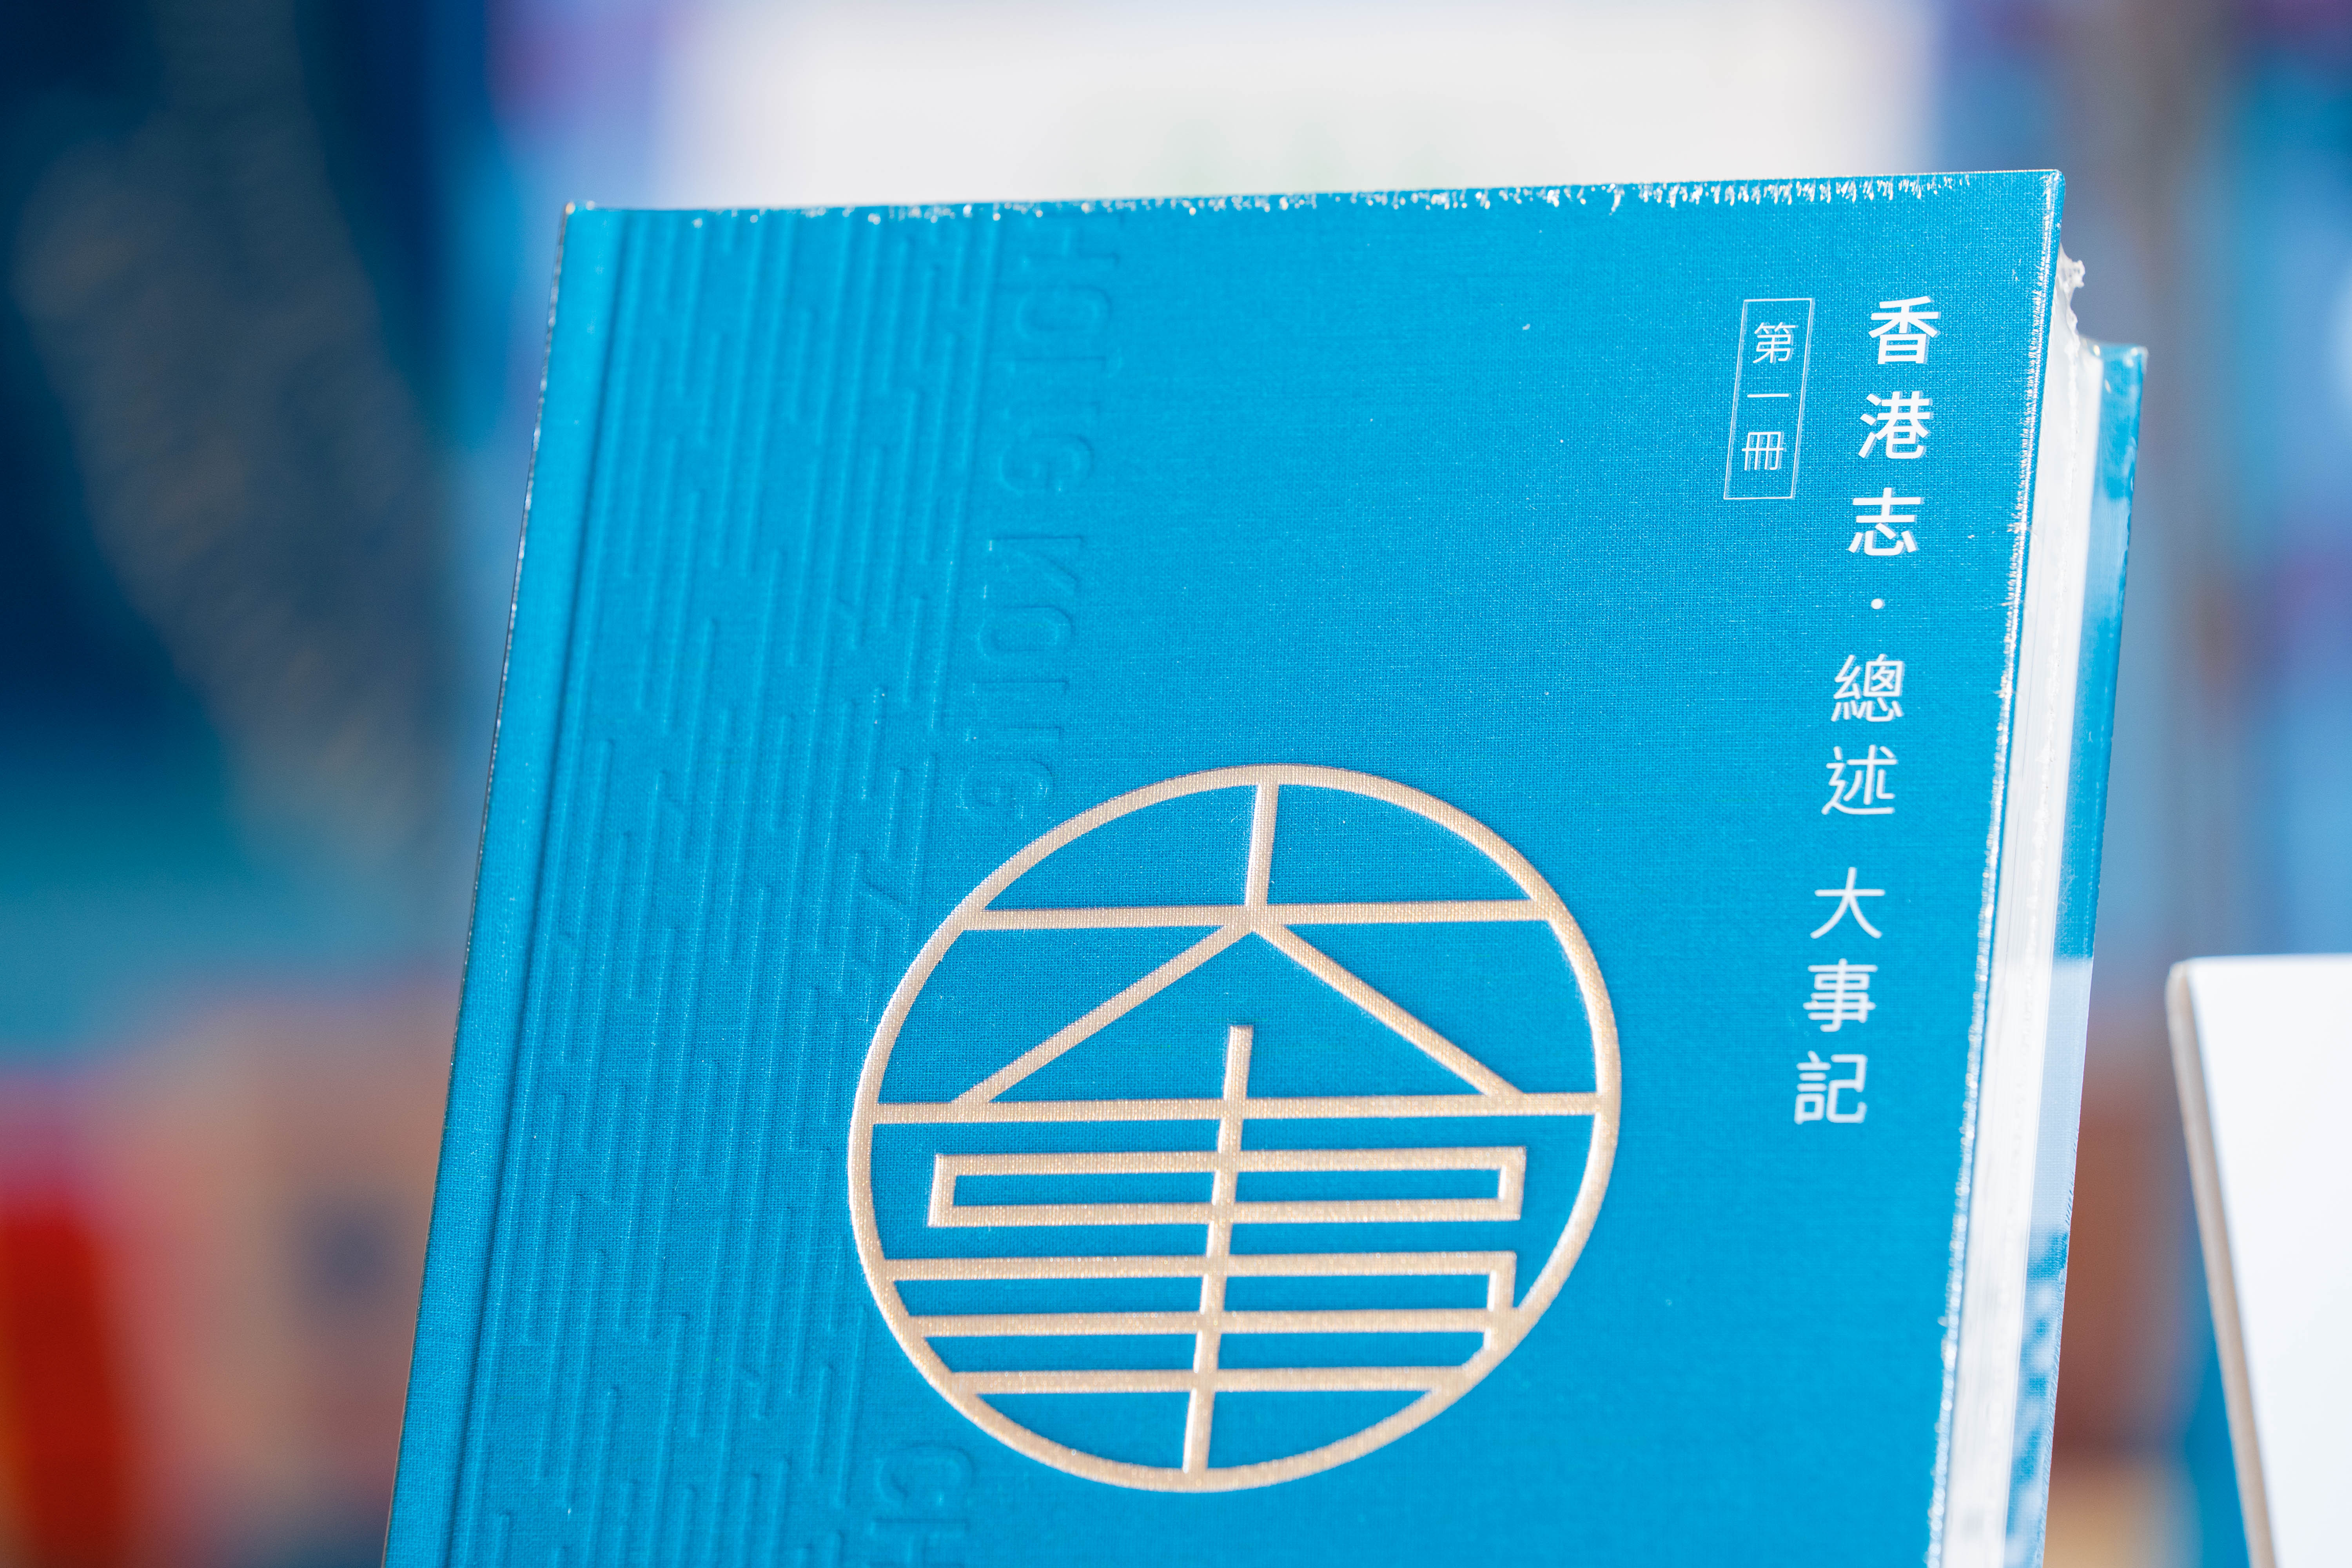 香港地方志中心編纂的《香港志》第一冊《總述  大事記》於2020年12月28日歷史性出版。